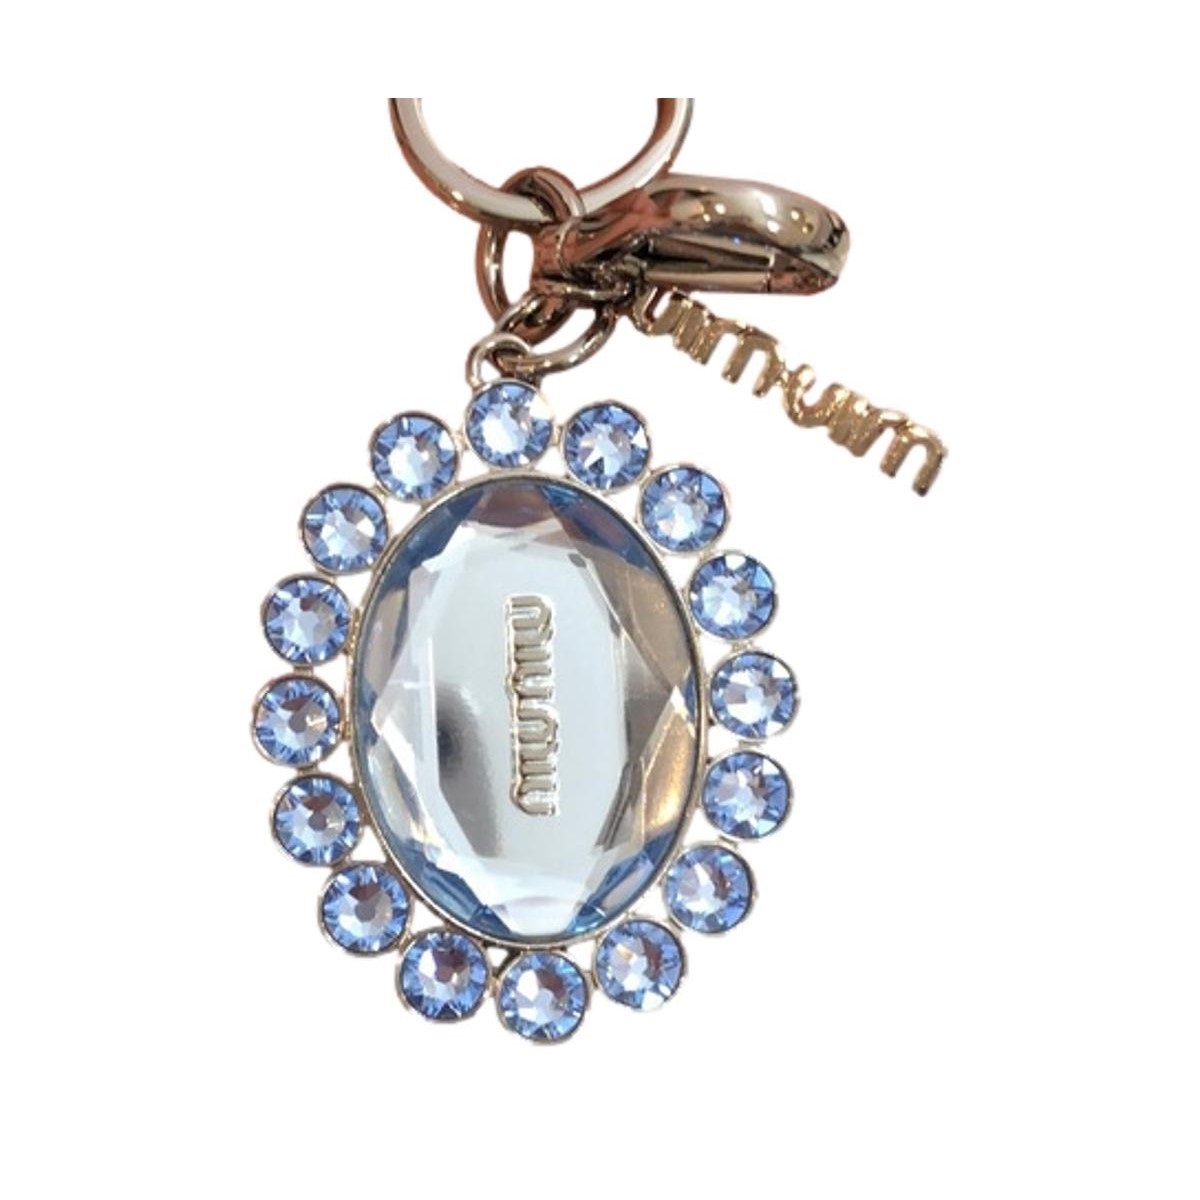 Miu Miu Trick Metallo Oval Crystal Blue Plex Charm Key Chain Key Ring 5TM092 - LUXURYMRKT